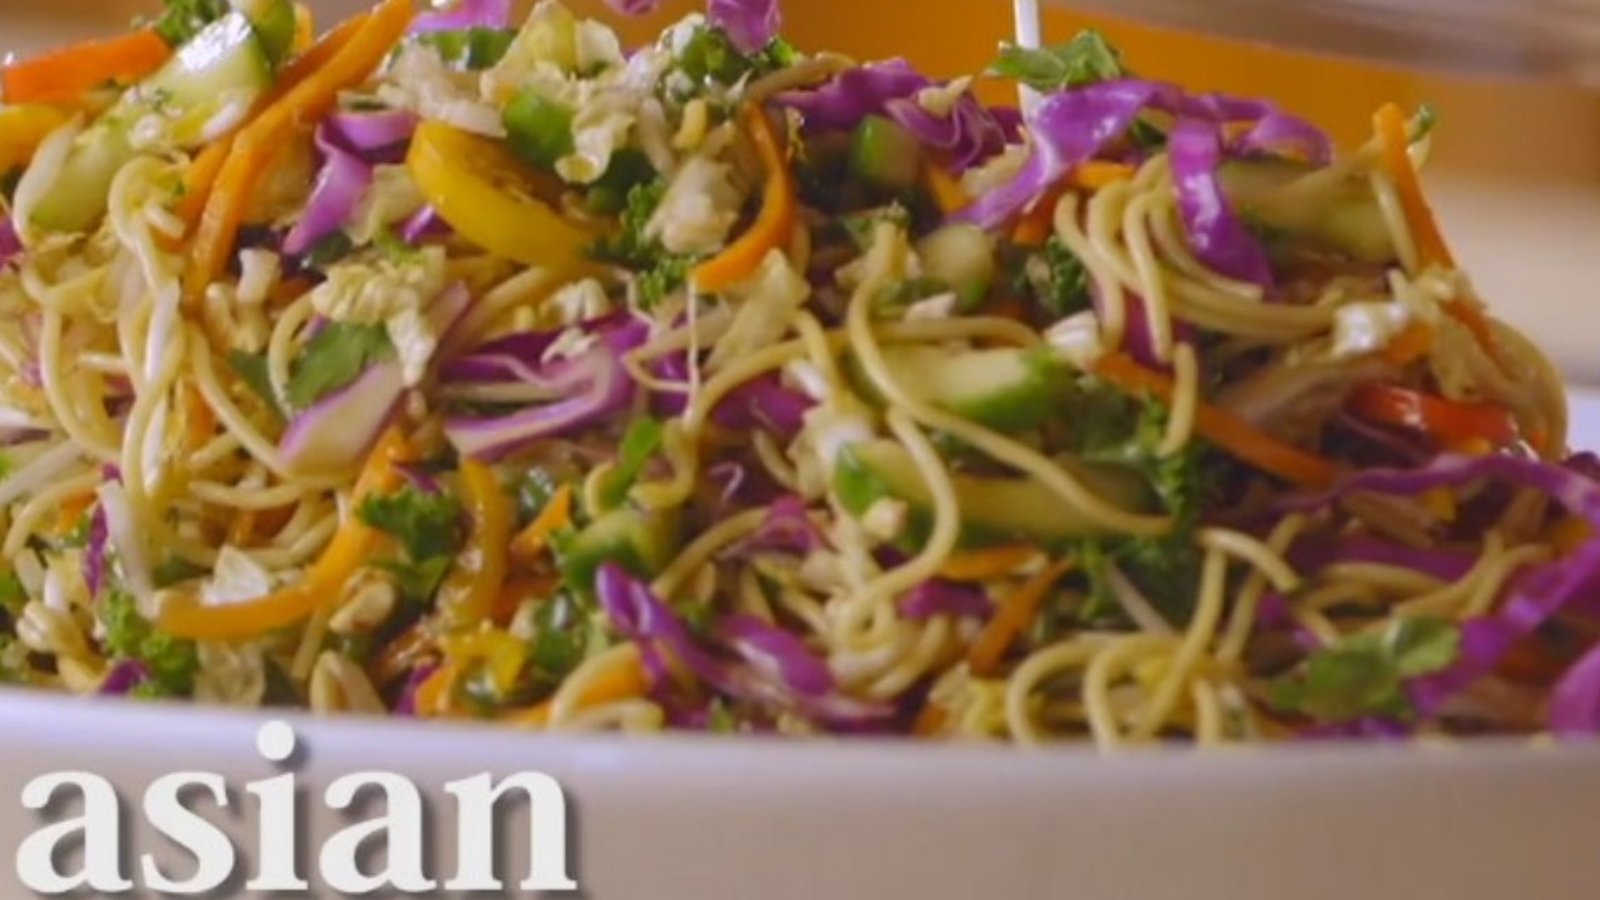 Cette salade de nouilles asiatiques a absolument tout pour plaire